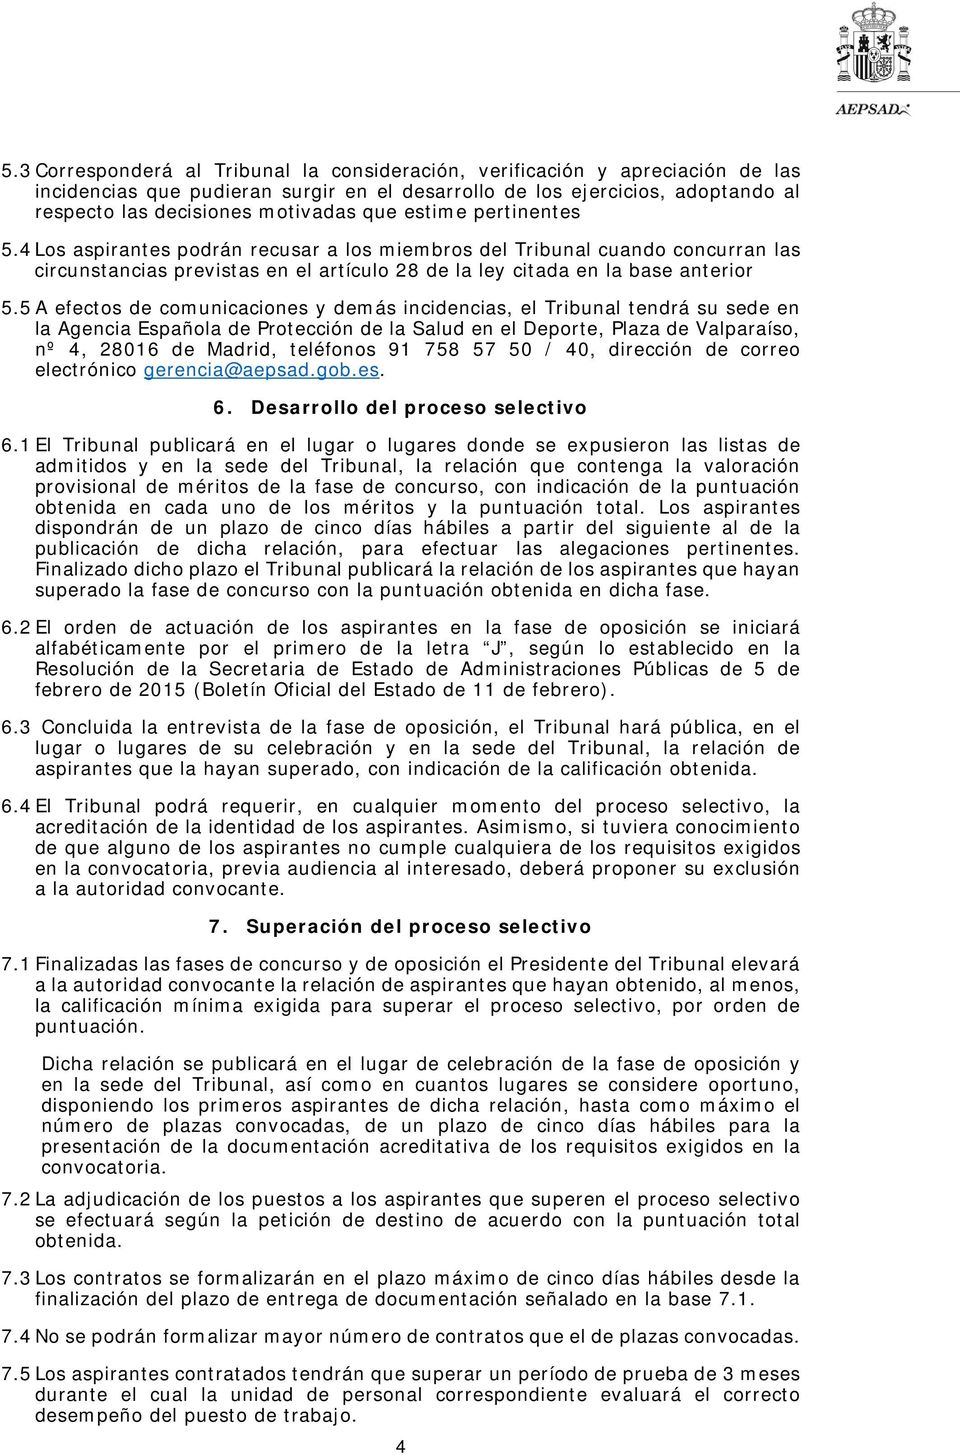 5 A efectos de comunicaciones y demás incidencias, el Tribunal tendrá su sede en la Agencia Española de Protección de la Salud en el Deporte, Plaza de Valparaíso, nº 4, 28016 de Madrid, teléfonos 91